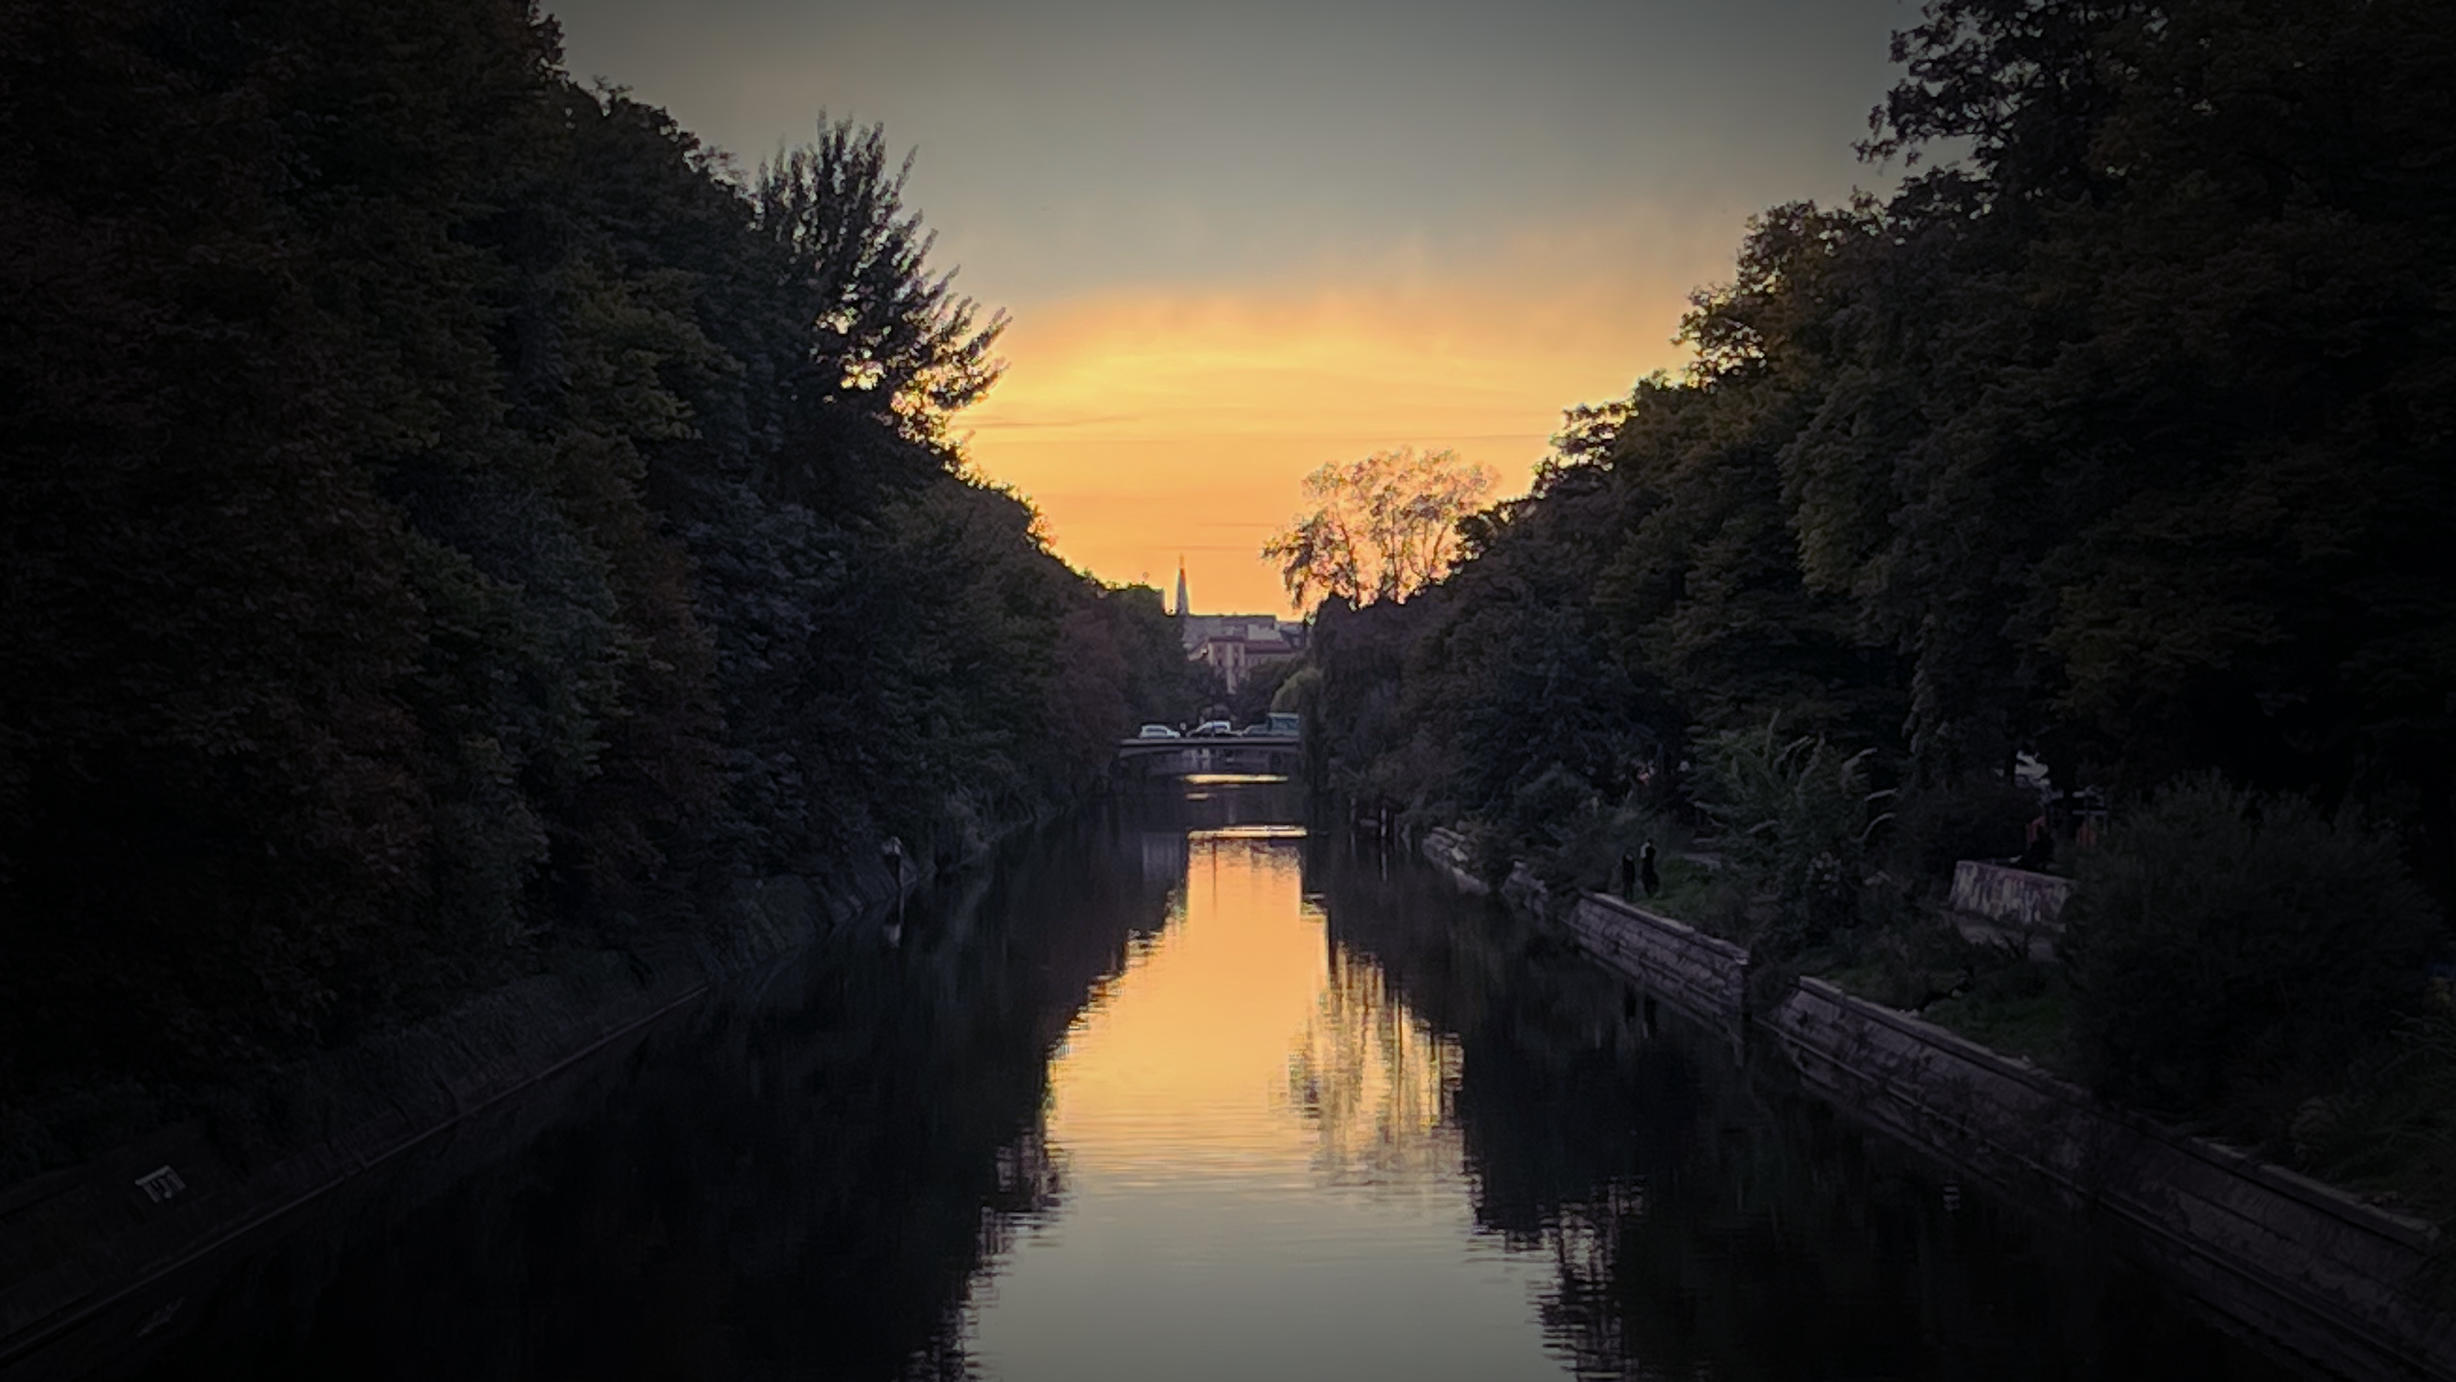 Sunset over Landwehrkanal in Berlin